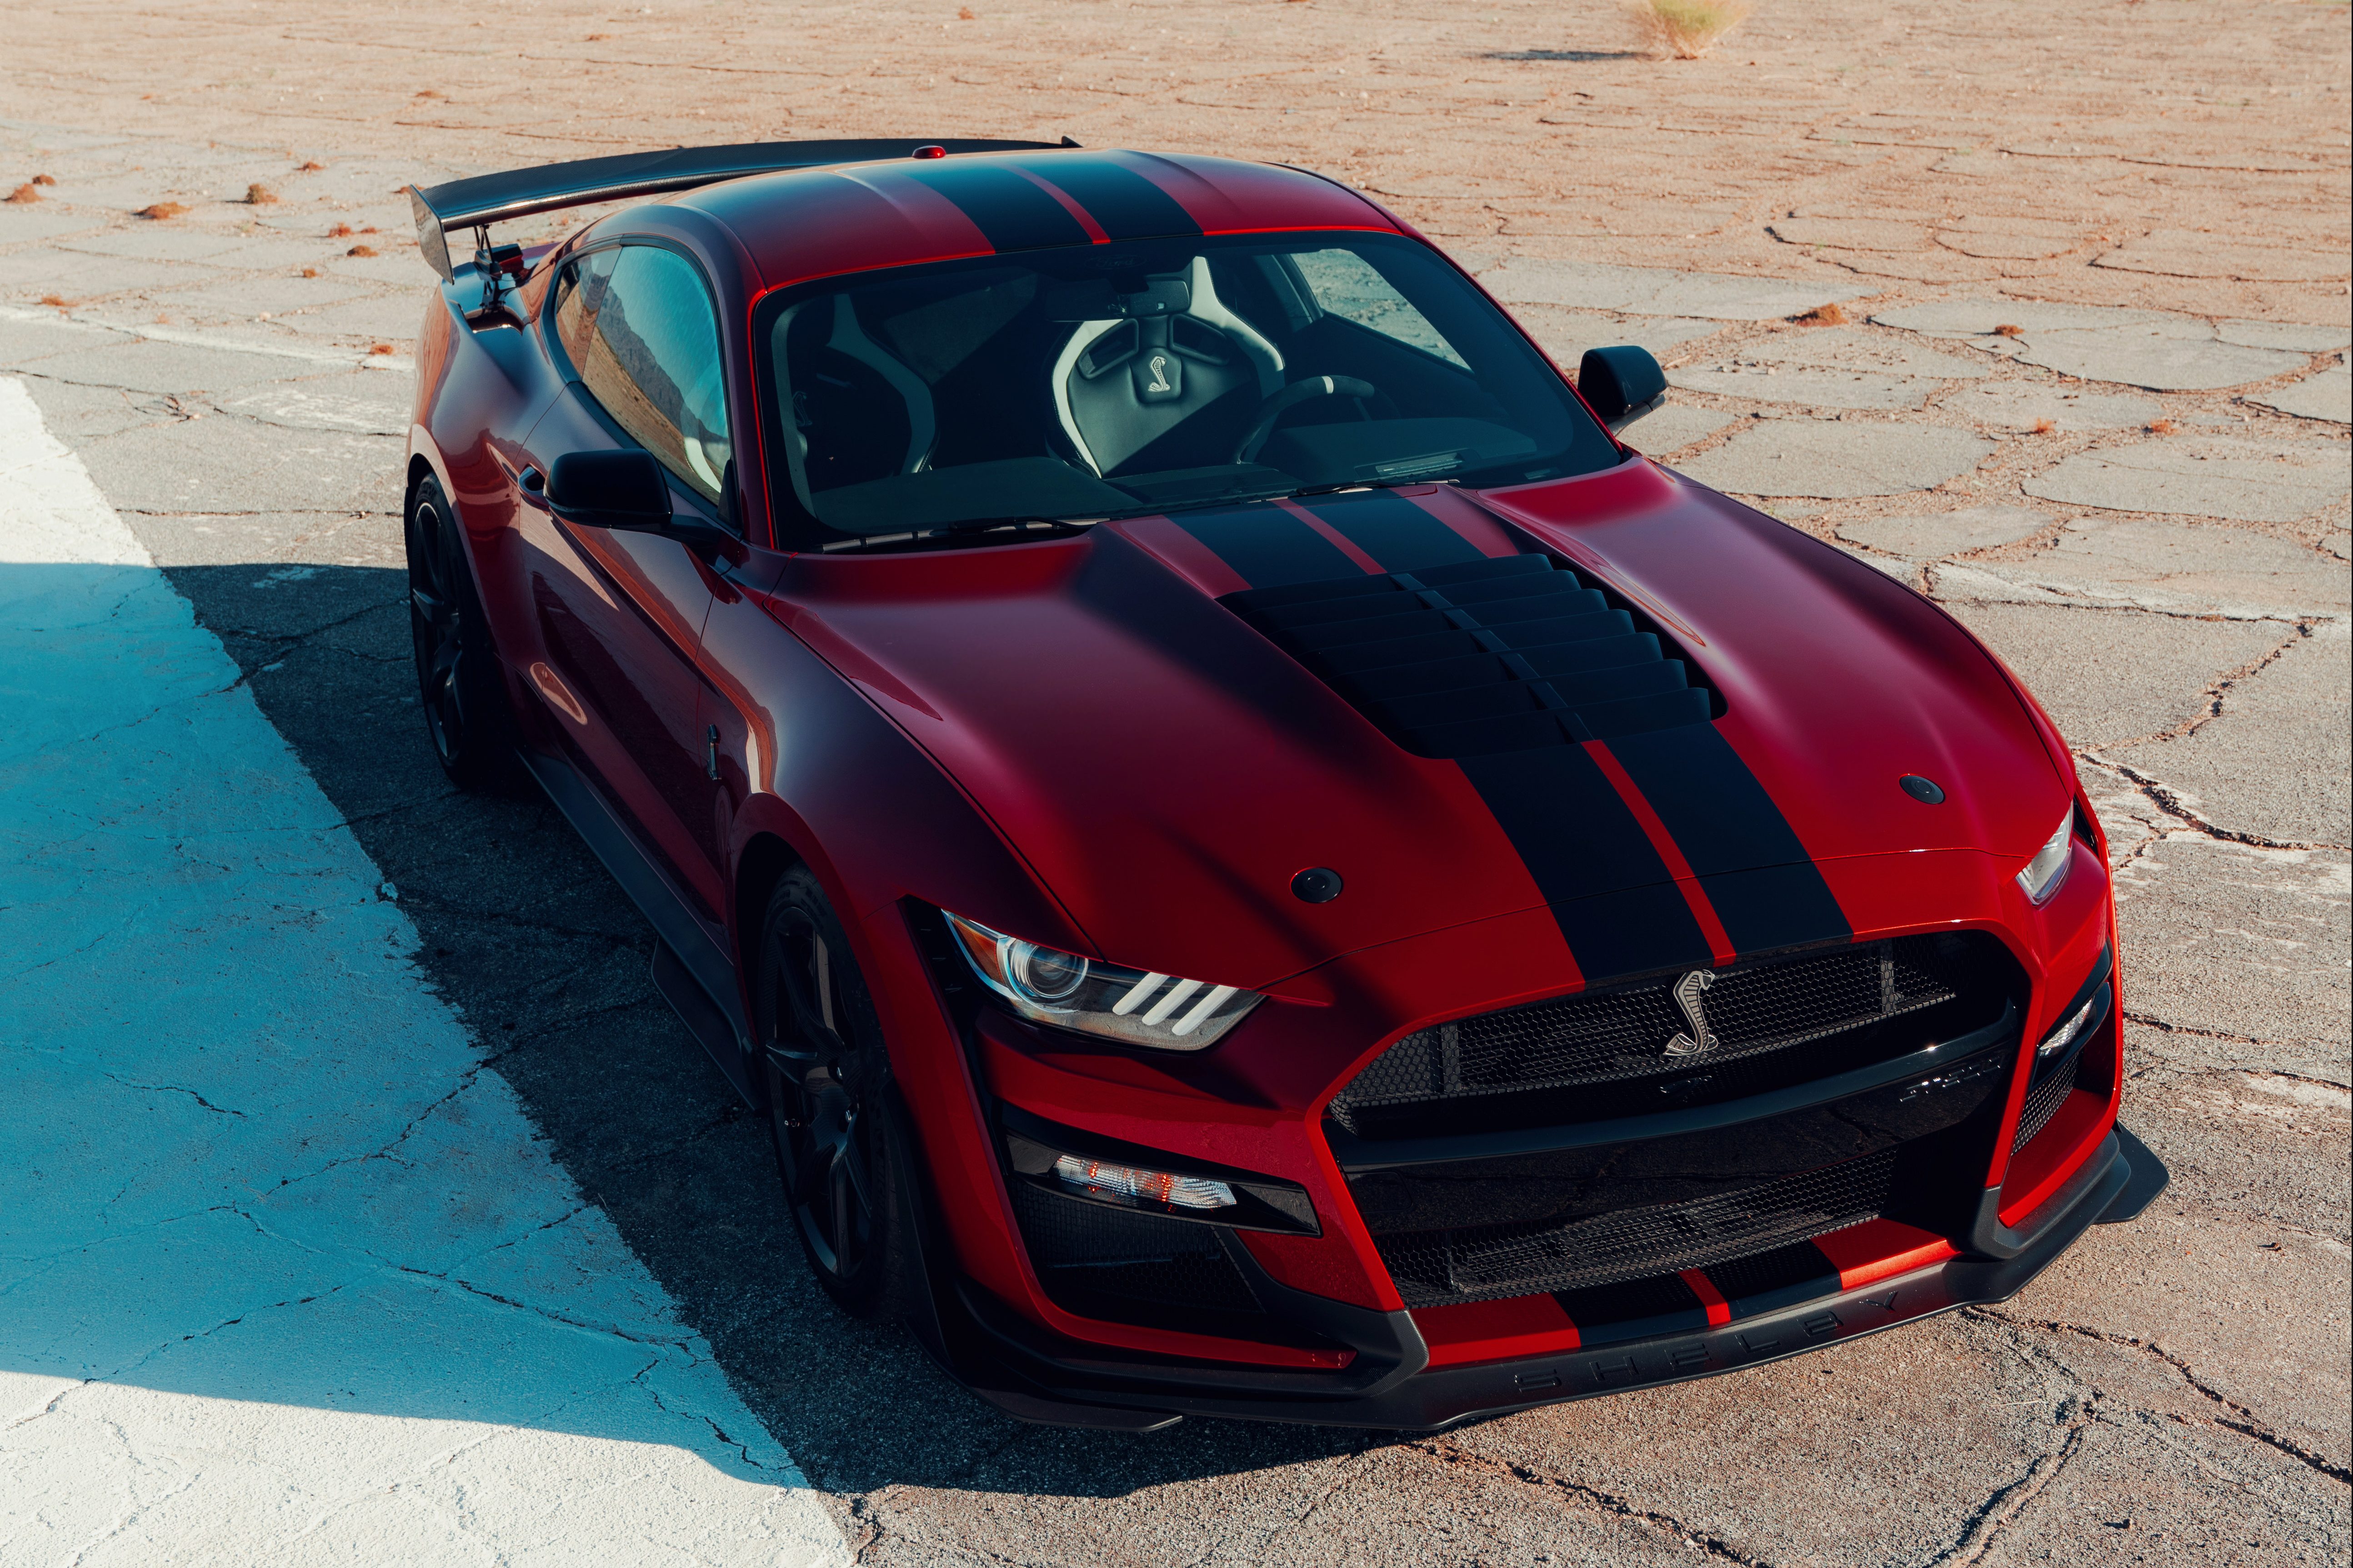 Moderno à moda antiga, Mustang GT500 tem tração traseira e V8 com 770 cv Quatro Rodas